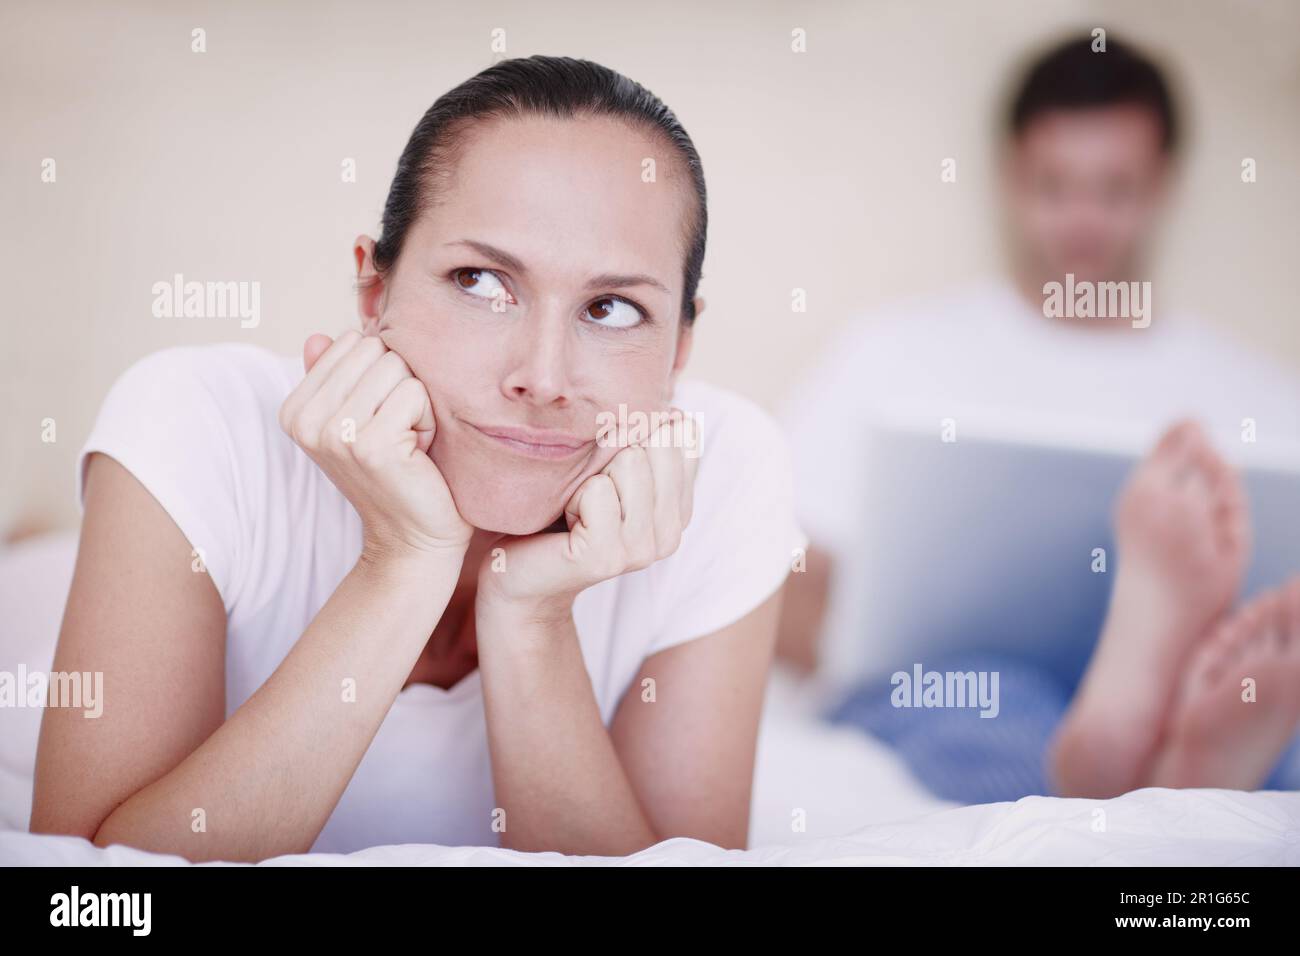 Er ist so egoistisch. Eine junge Frau, die verärgert von ihrem Mann aussieht, der im Hintergrund mit einem Laptop sitzt. Stockfoto